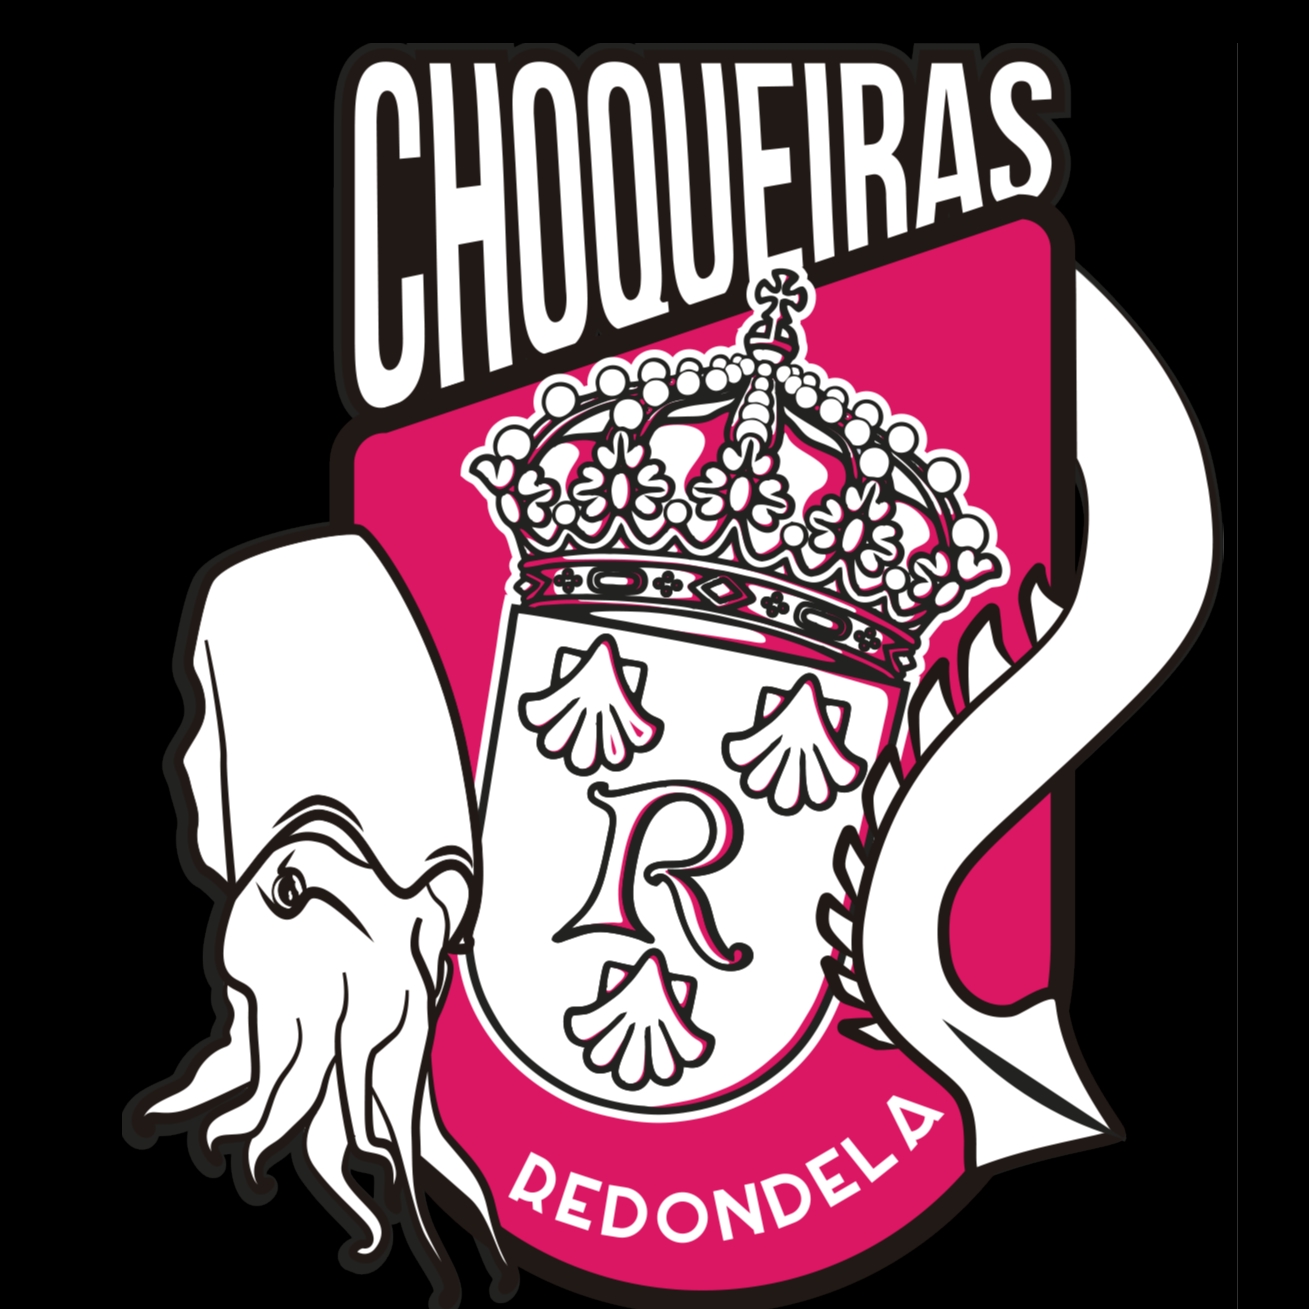 CBF AS CHOQUEIRAS DE REDONDELA